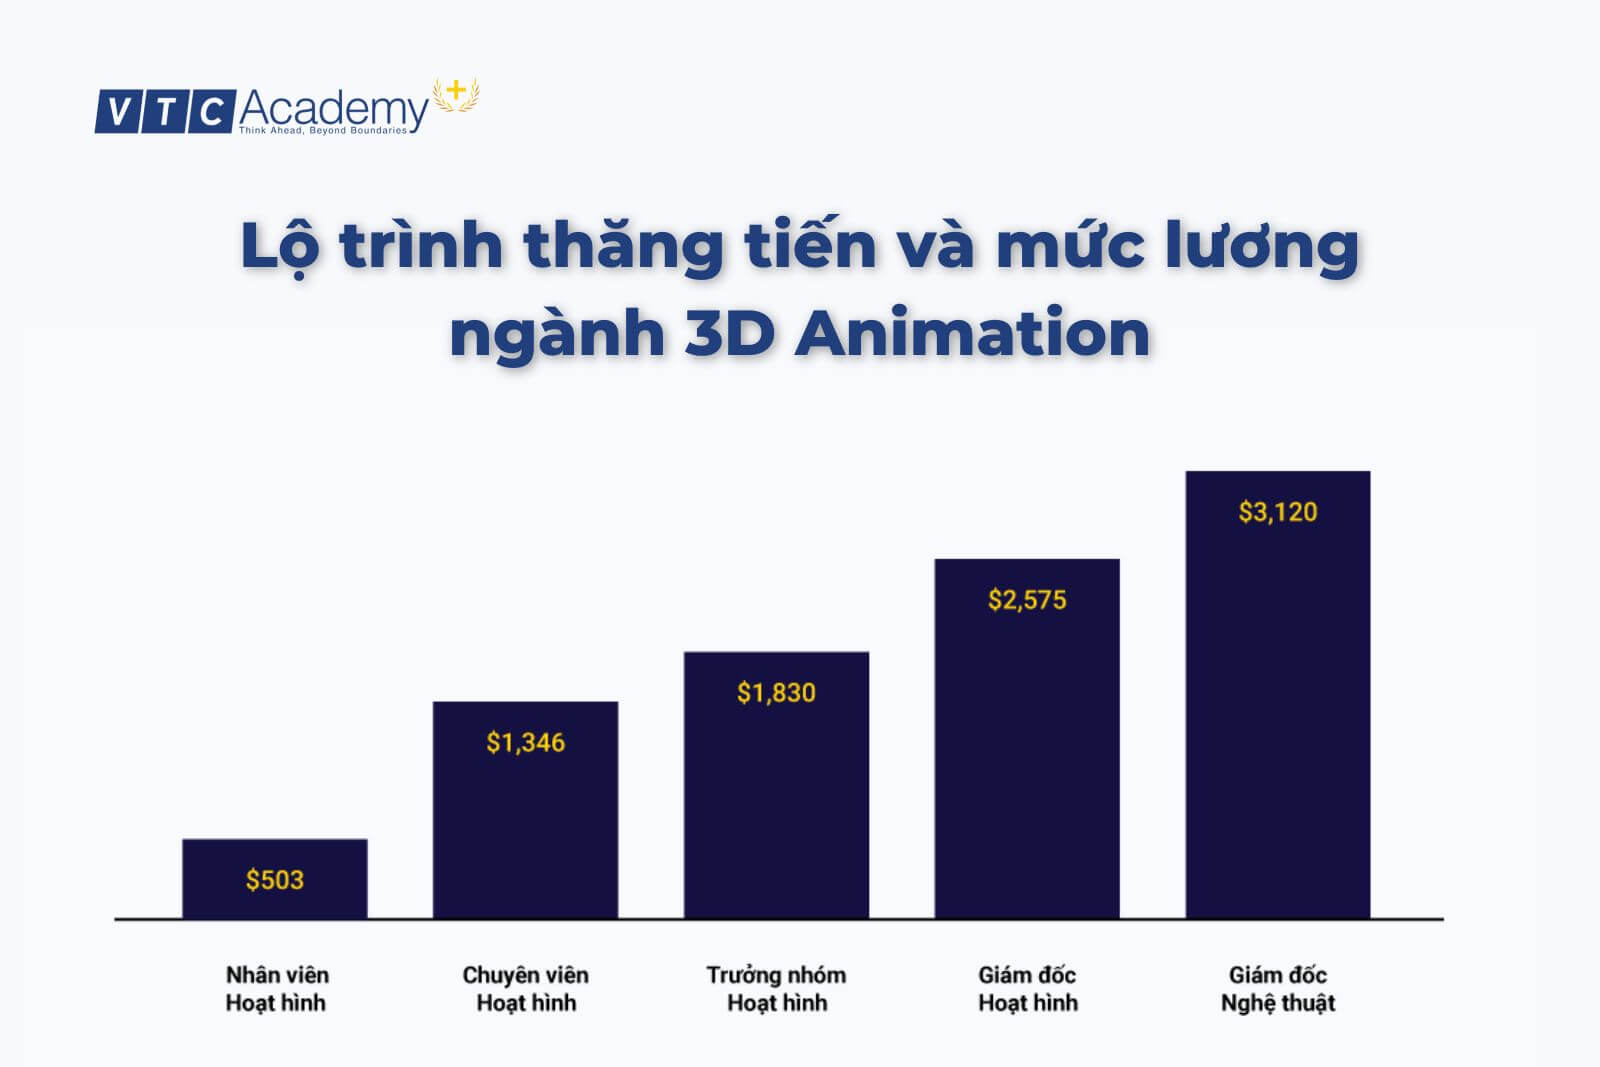 Lộ trình thăng tiến và mức lương ngành 3D Animation